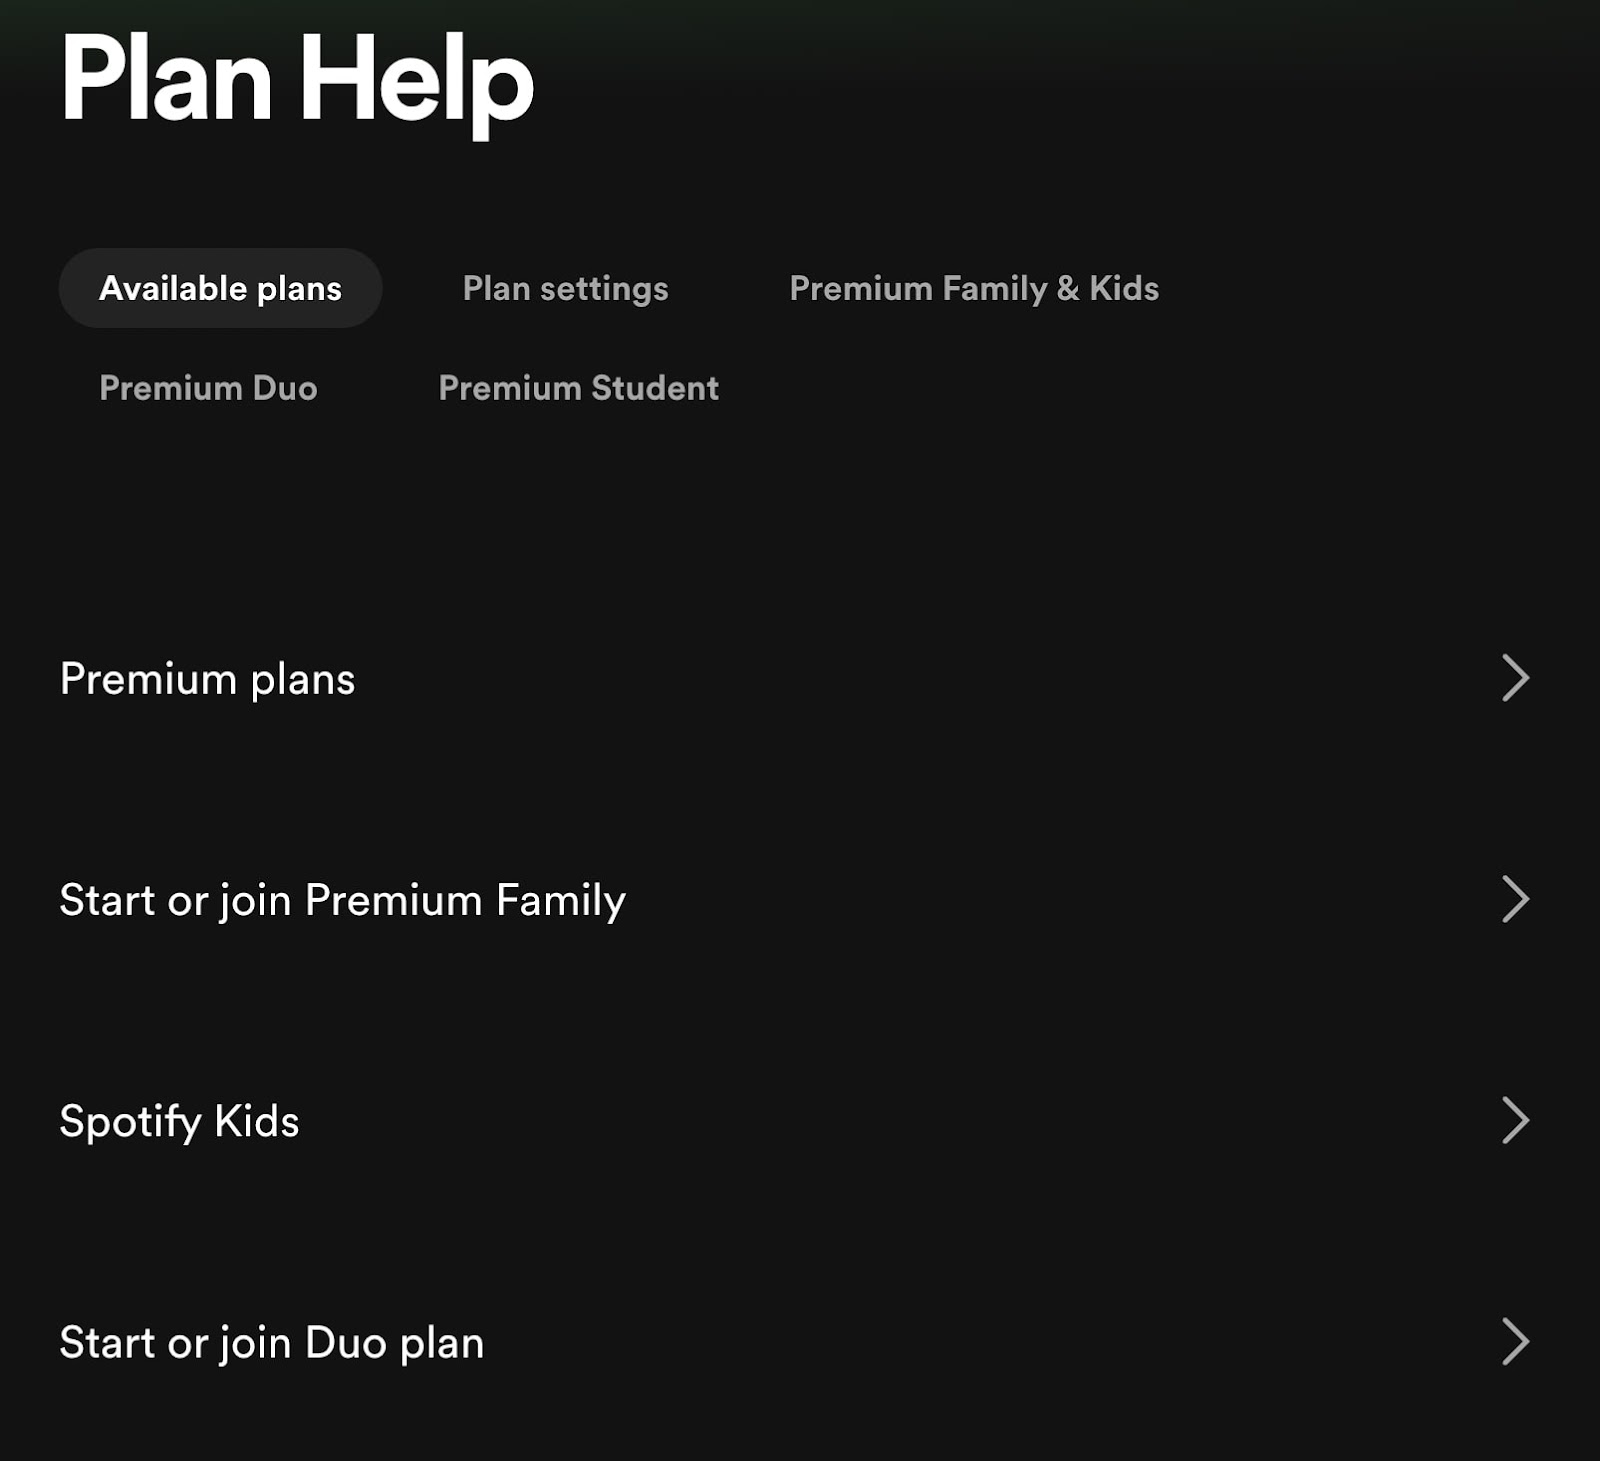 Spotify’s "Plan Help" page